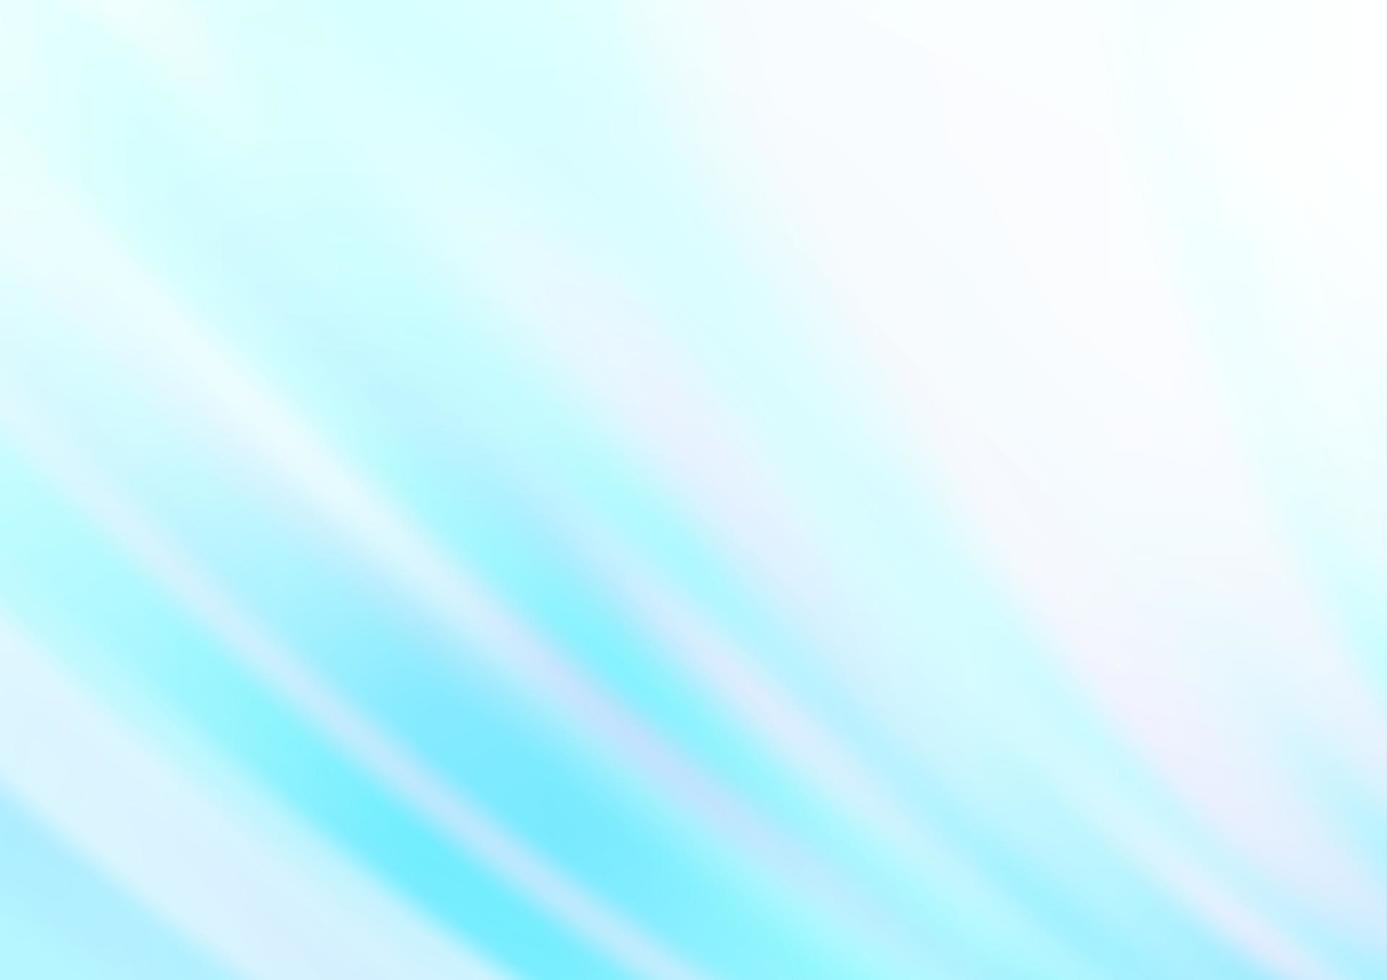 fundo azul claro do vetor com linhas abstratas.